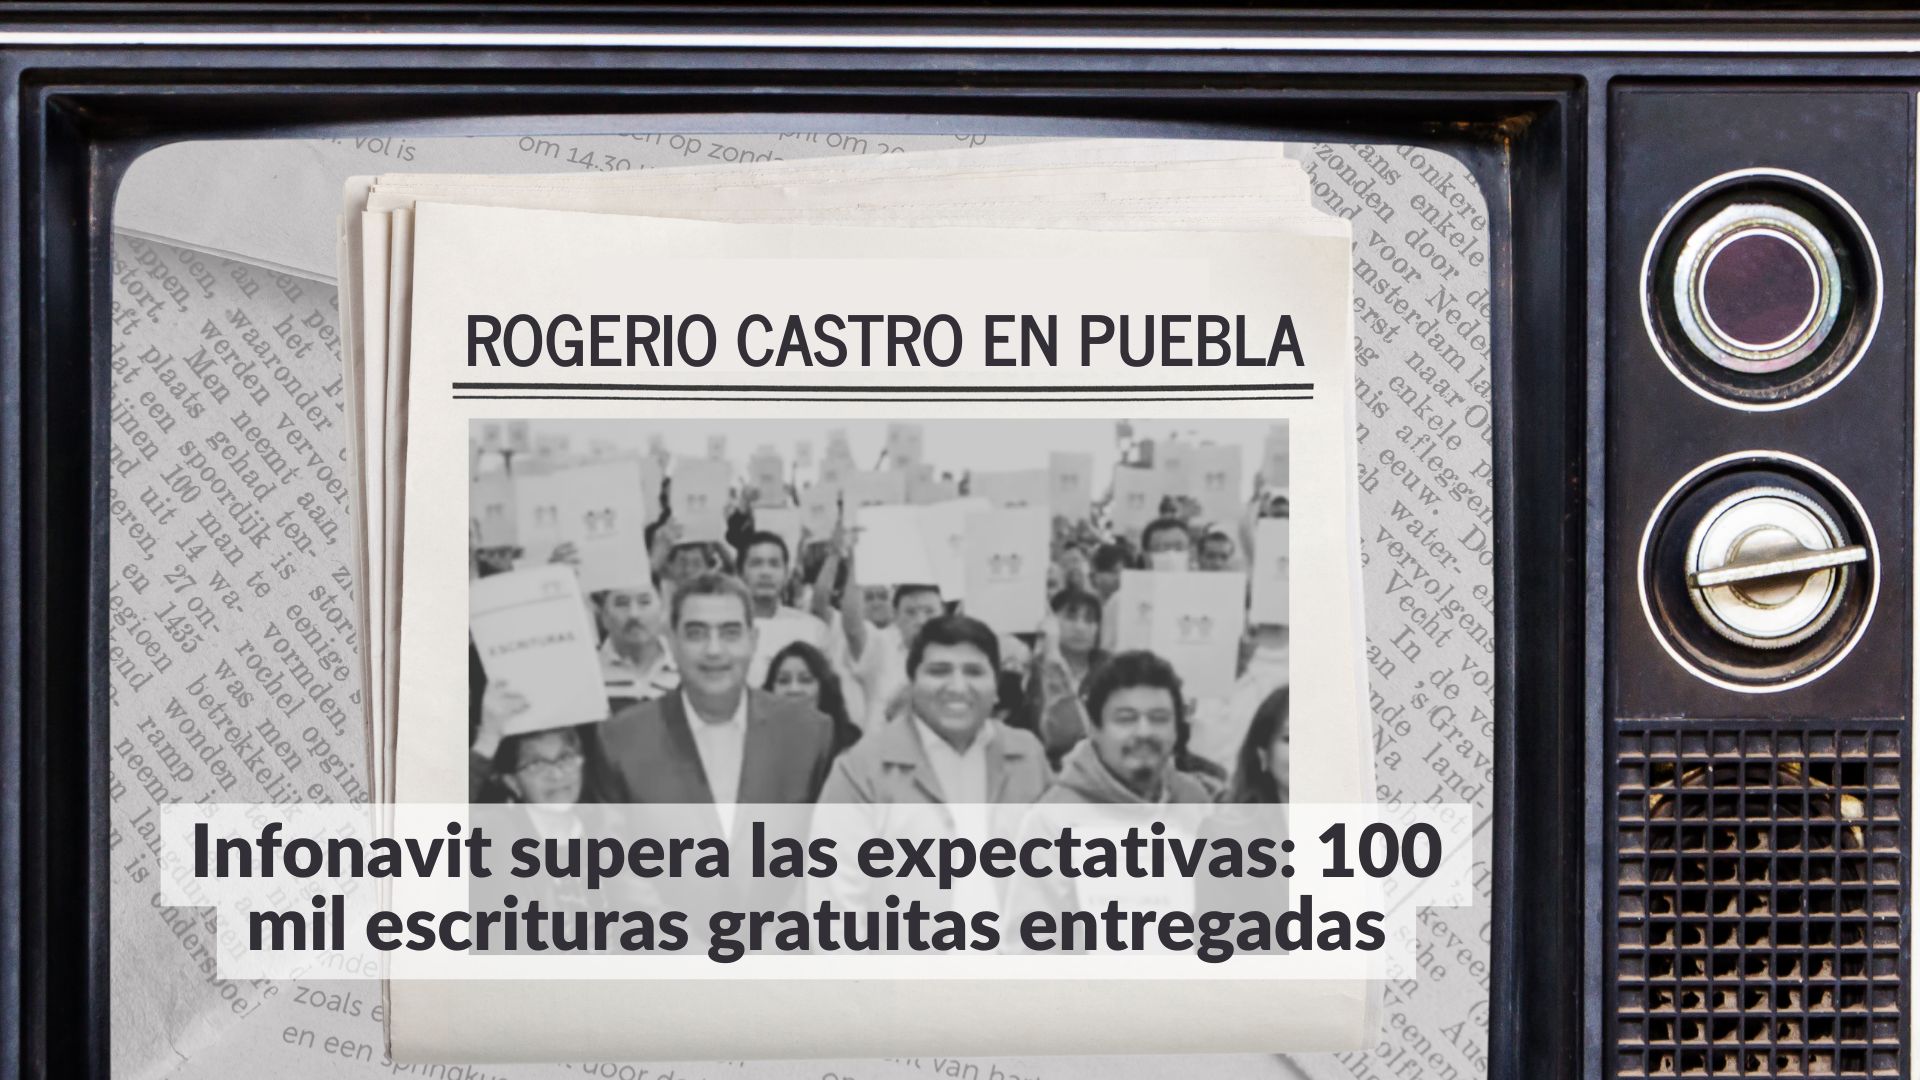 Un legado de seguridad y bienestar: Infonavit celebra la entrega de 100,000 escrituras gratuitas bajo el liderazgo de Rogerio Castro Vázquez